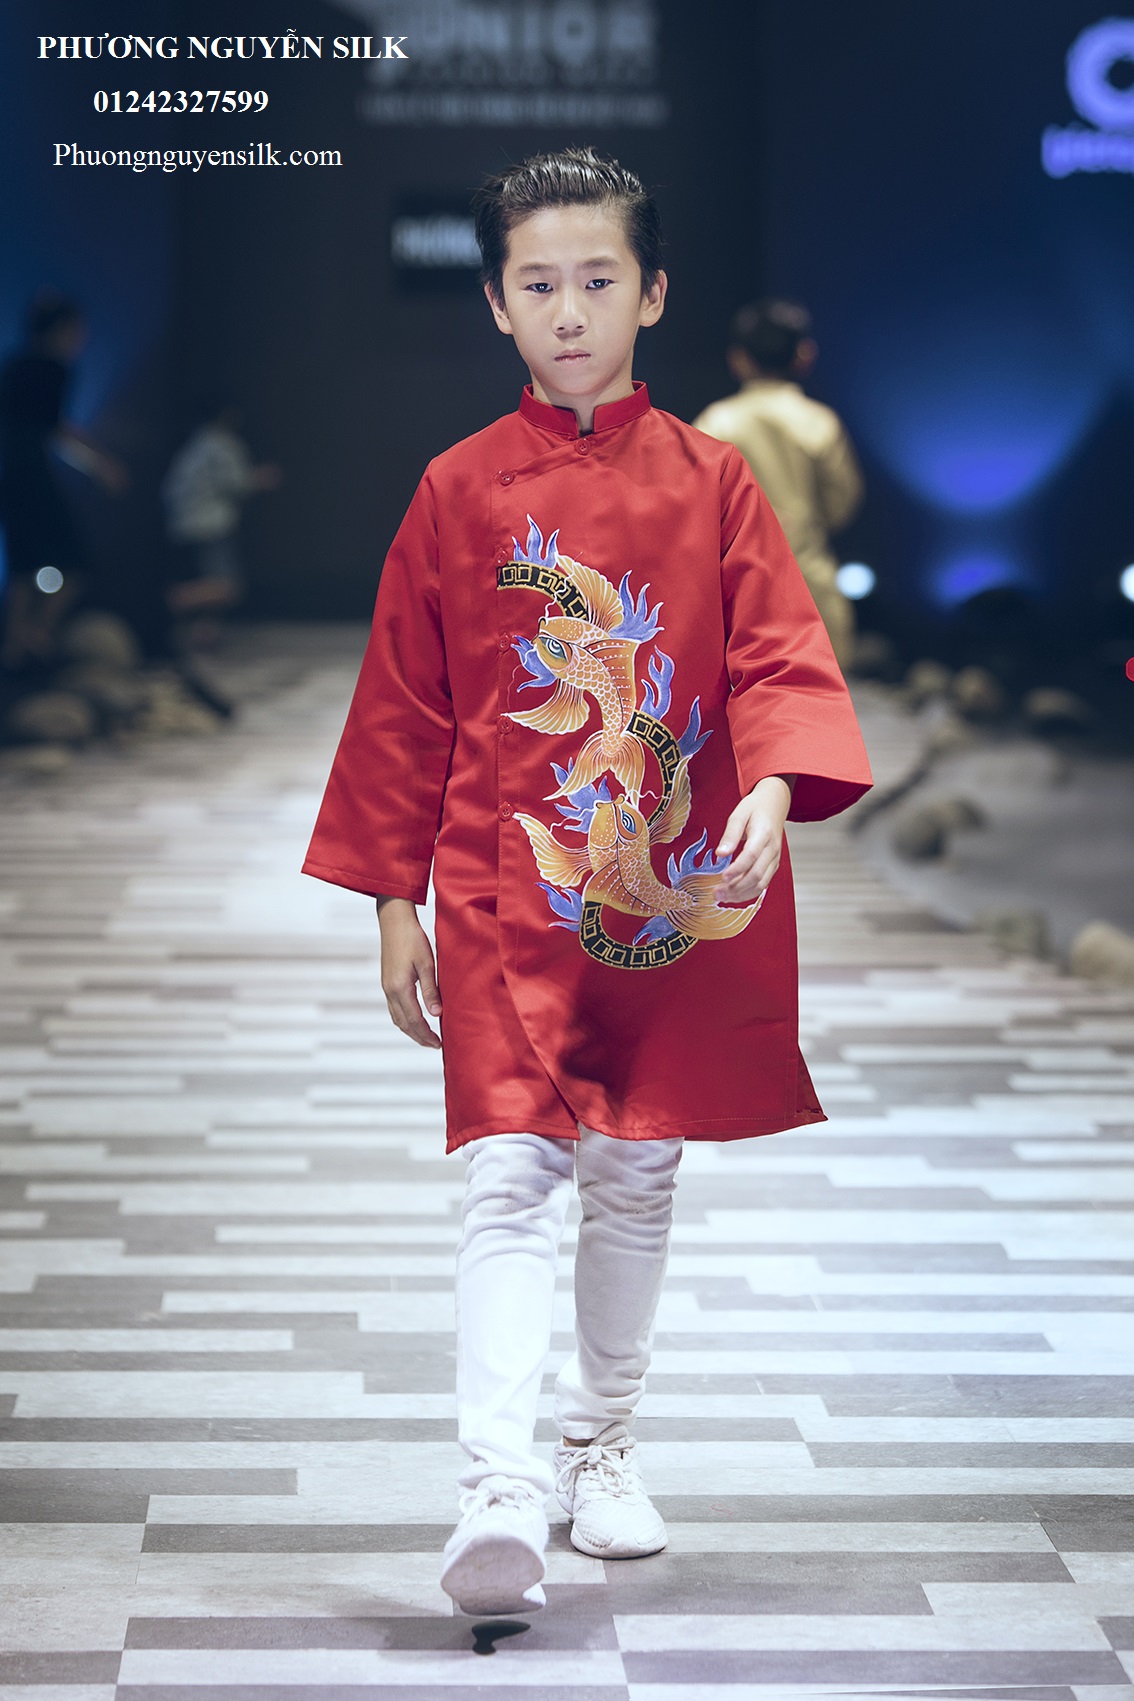 Áo dài trẻ em Phương Nguyễn Silk là một thương hiệu trẻ em lâu đời